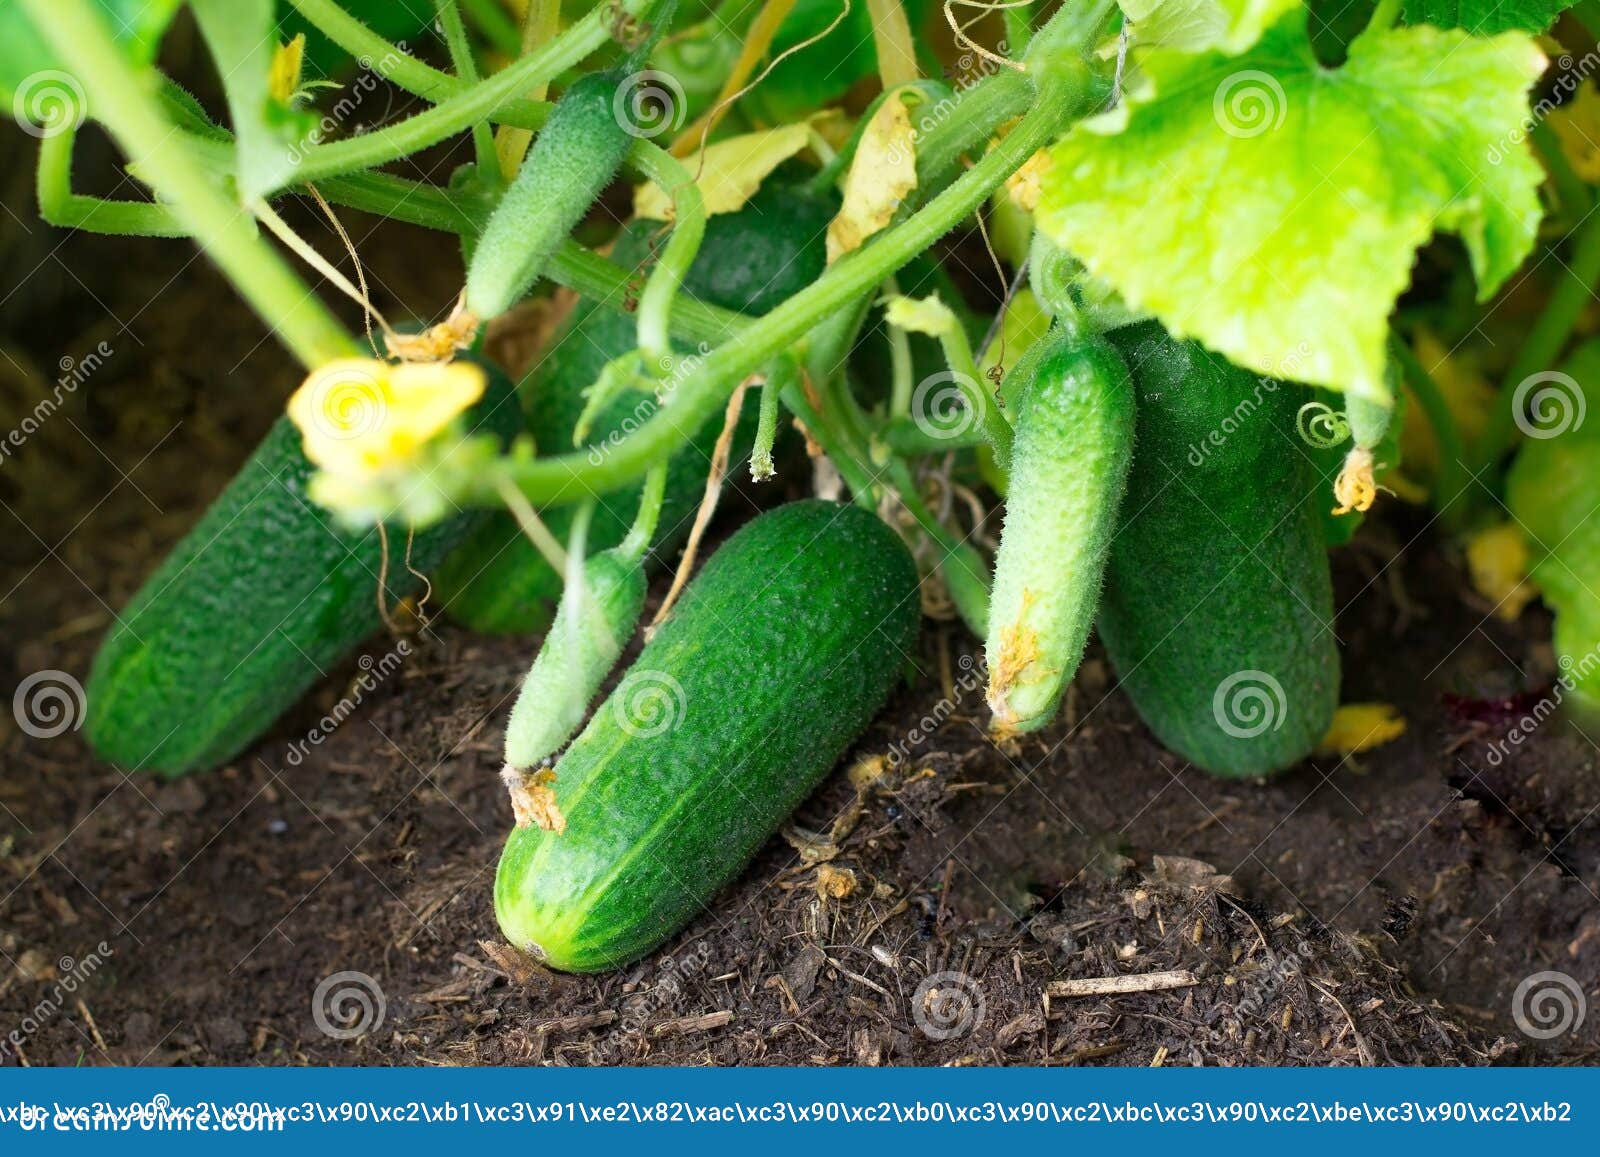 Cucumbers - Harvst